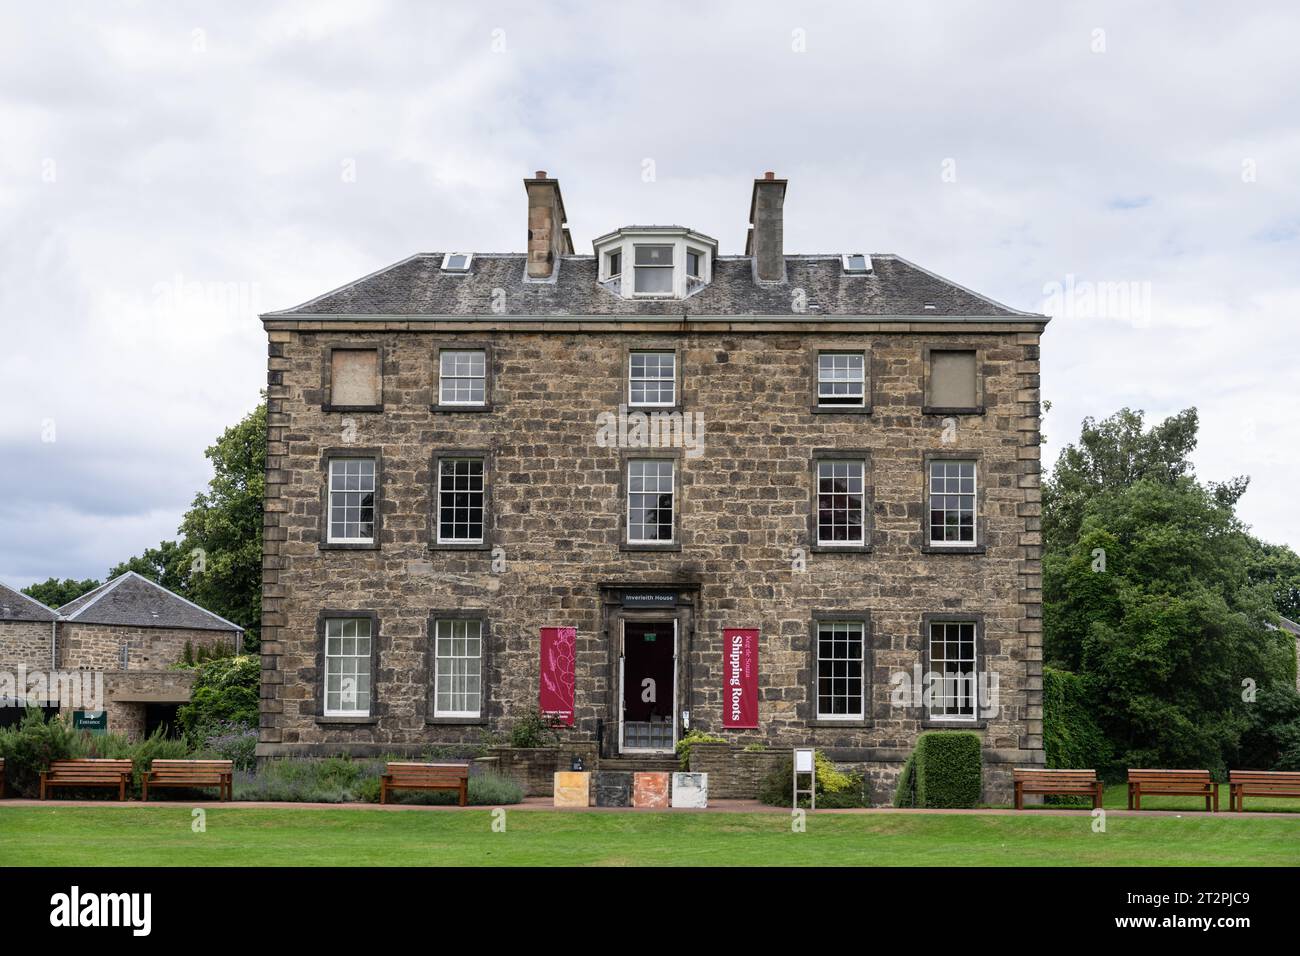 La façade de la maison Inverleith dans les jardins botaniques royaux, Édimbourg, Écosse Banque D'Images